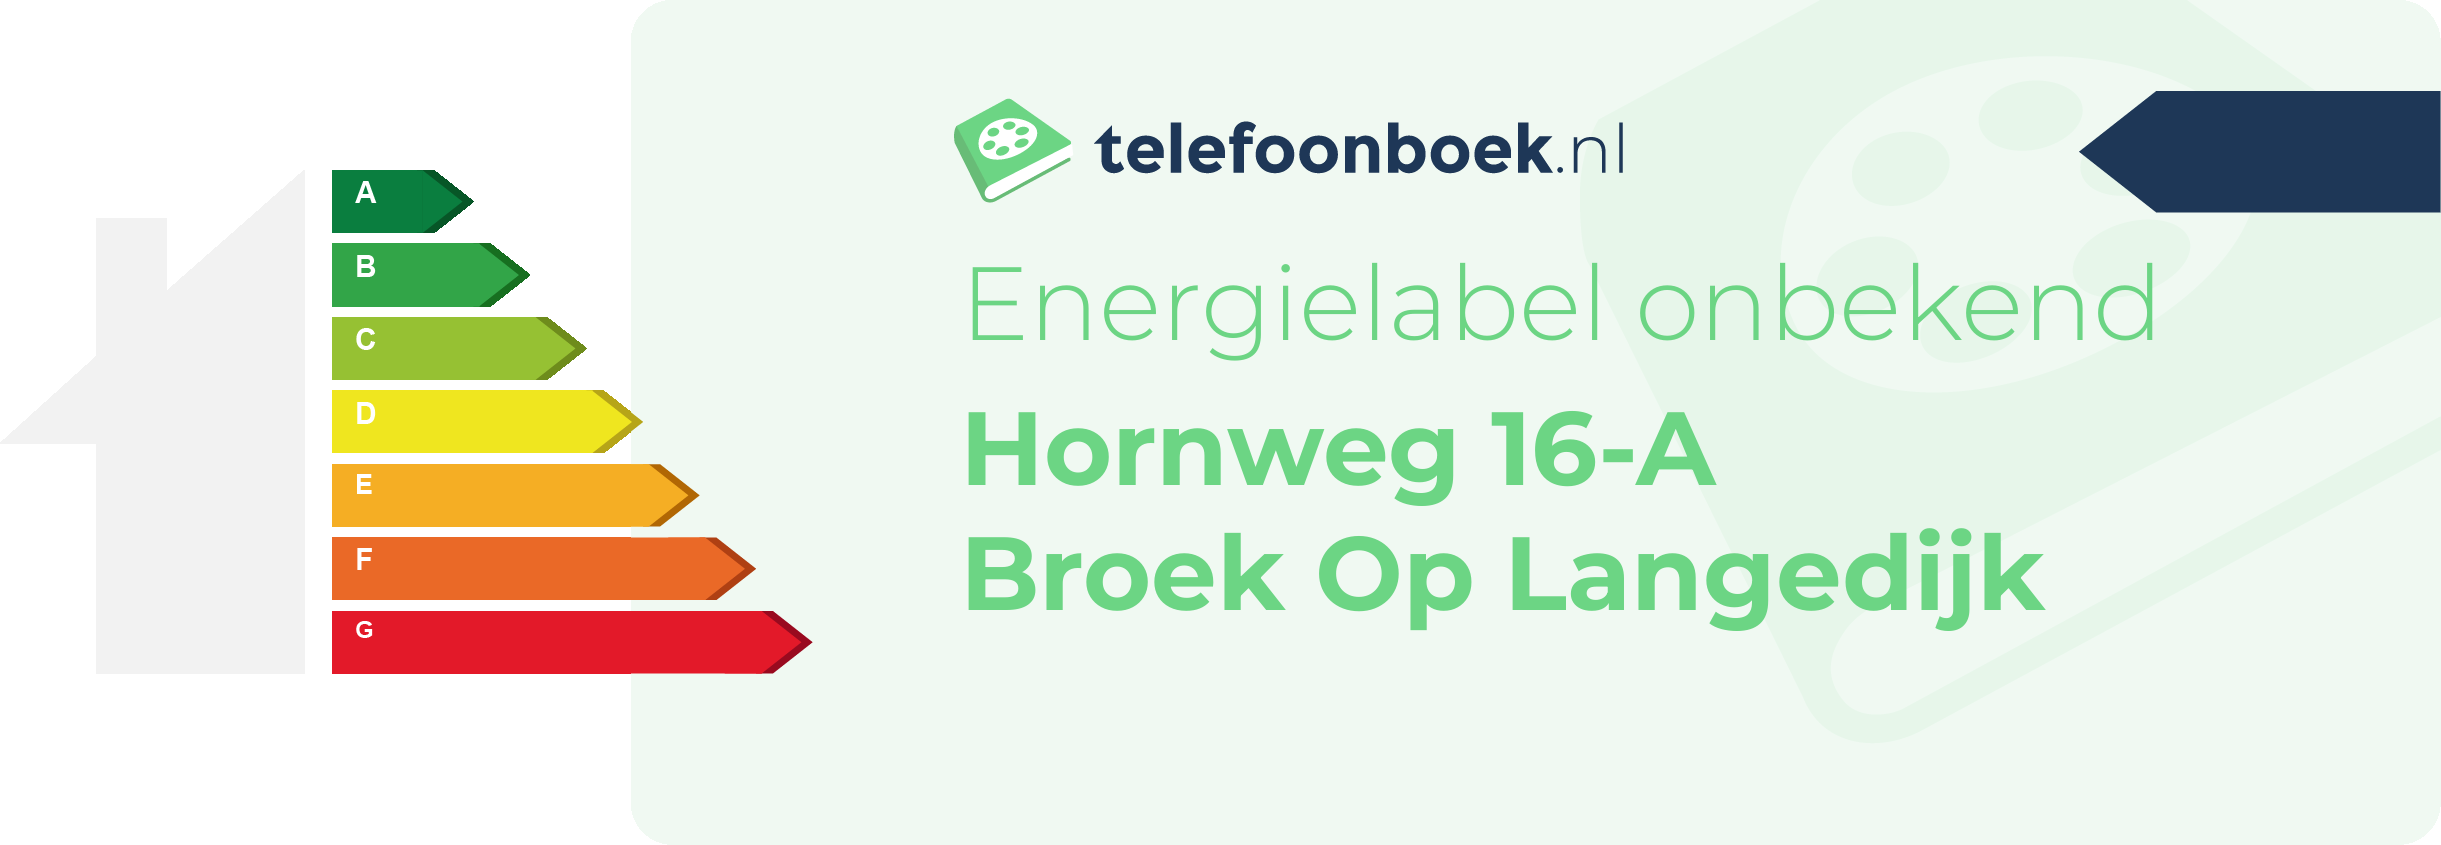 Energielabel Hornweg 16-A Broek Op Langedijk